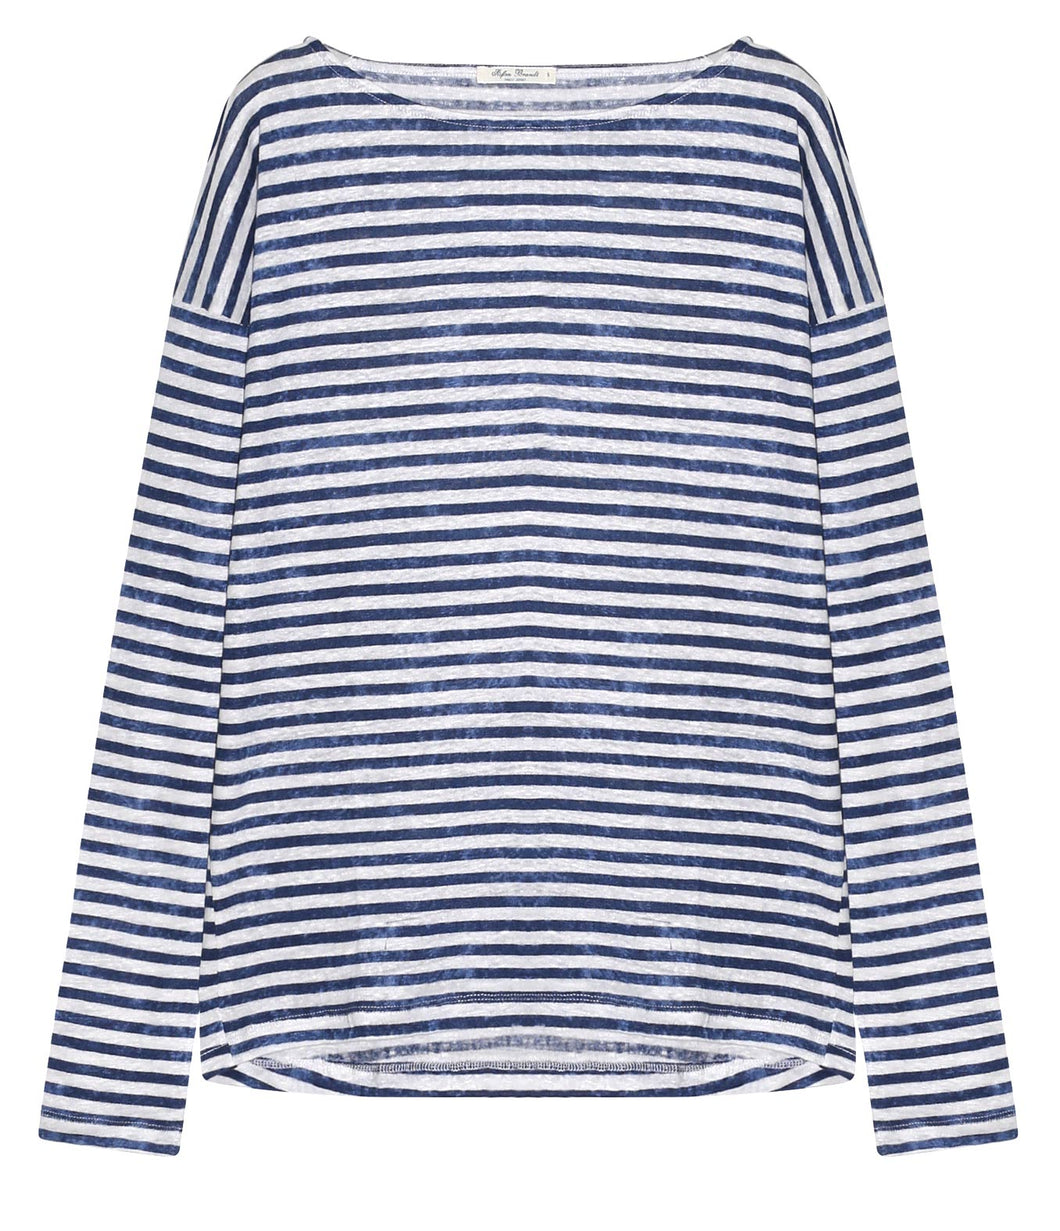 Stefan Brandt Linen Shirt Alessa Stripes U-Boot Neckline Long Sleeve